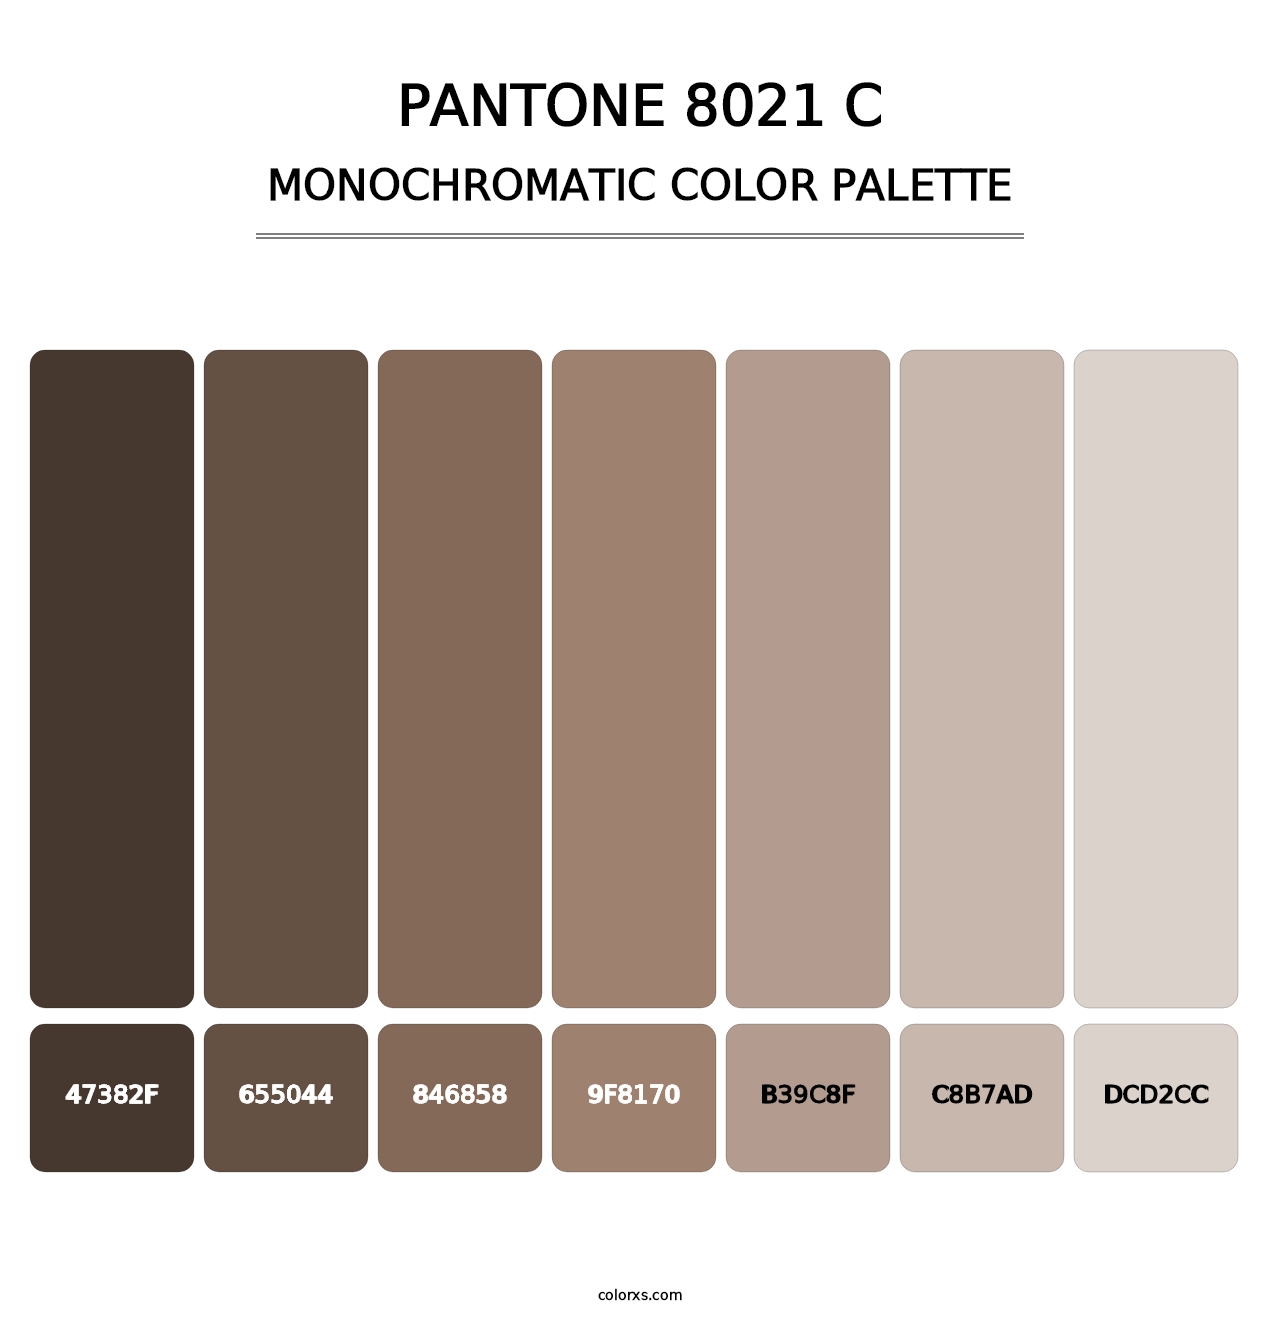 PANTONE 8021 C - Monochromatic Color Palette